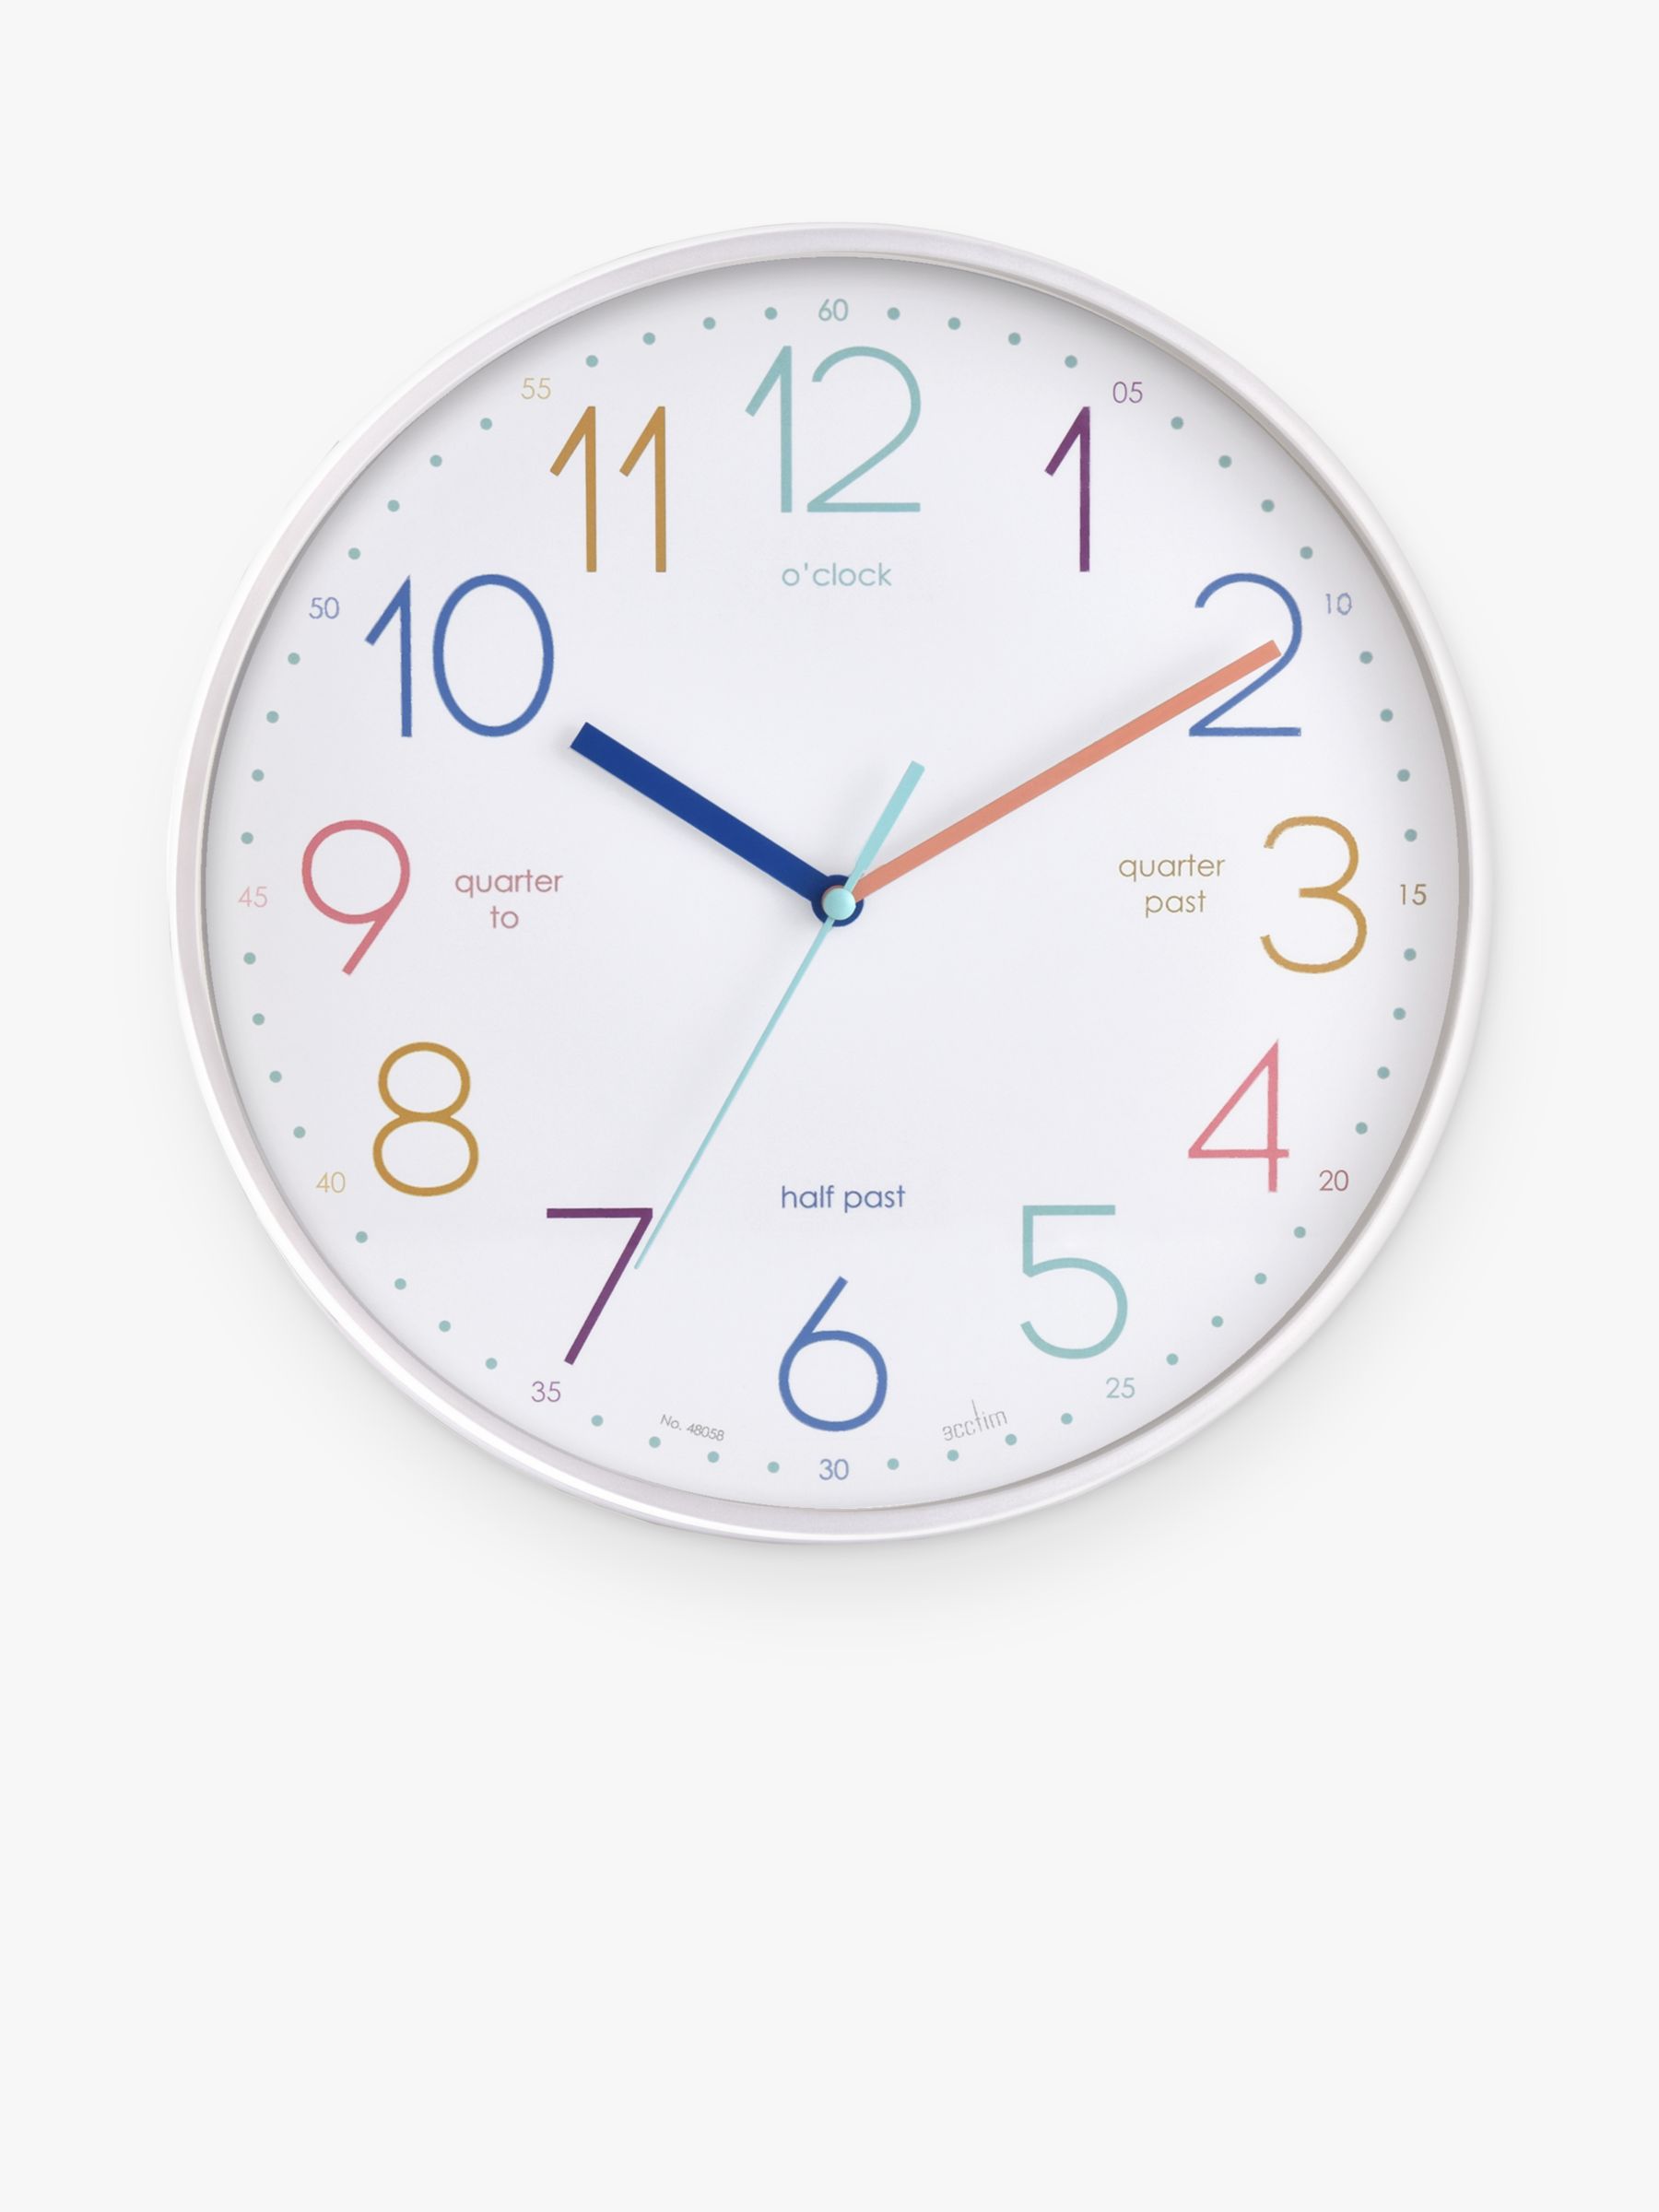 Oklahoma daylight saving time bill to 'lock the clock' passes Senate